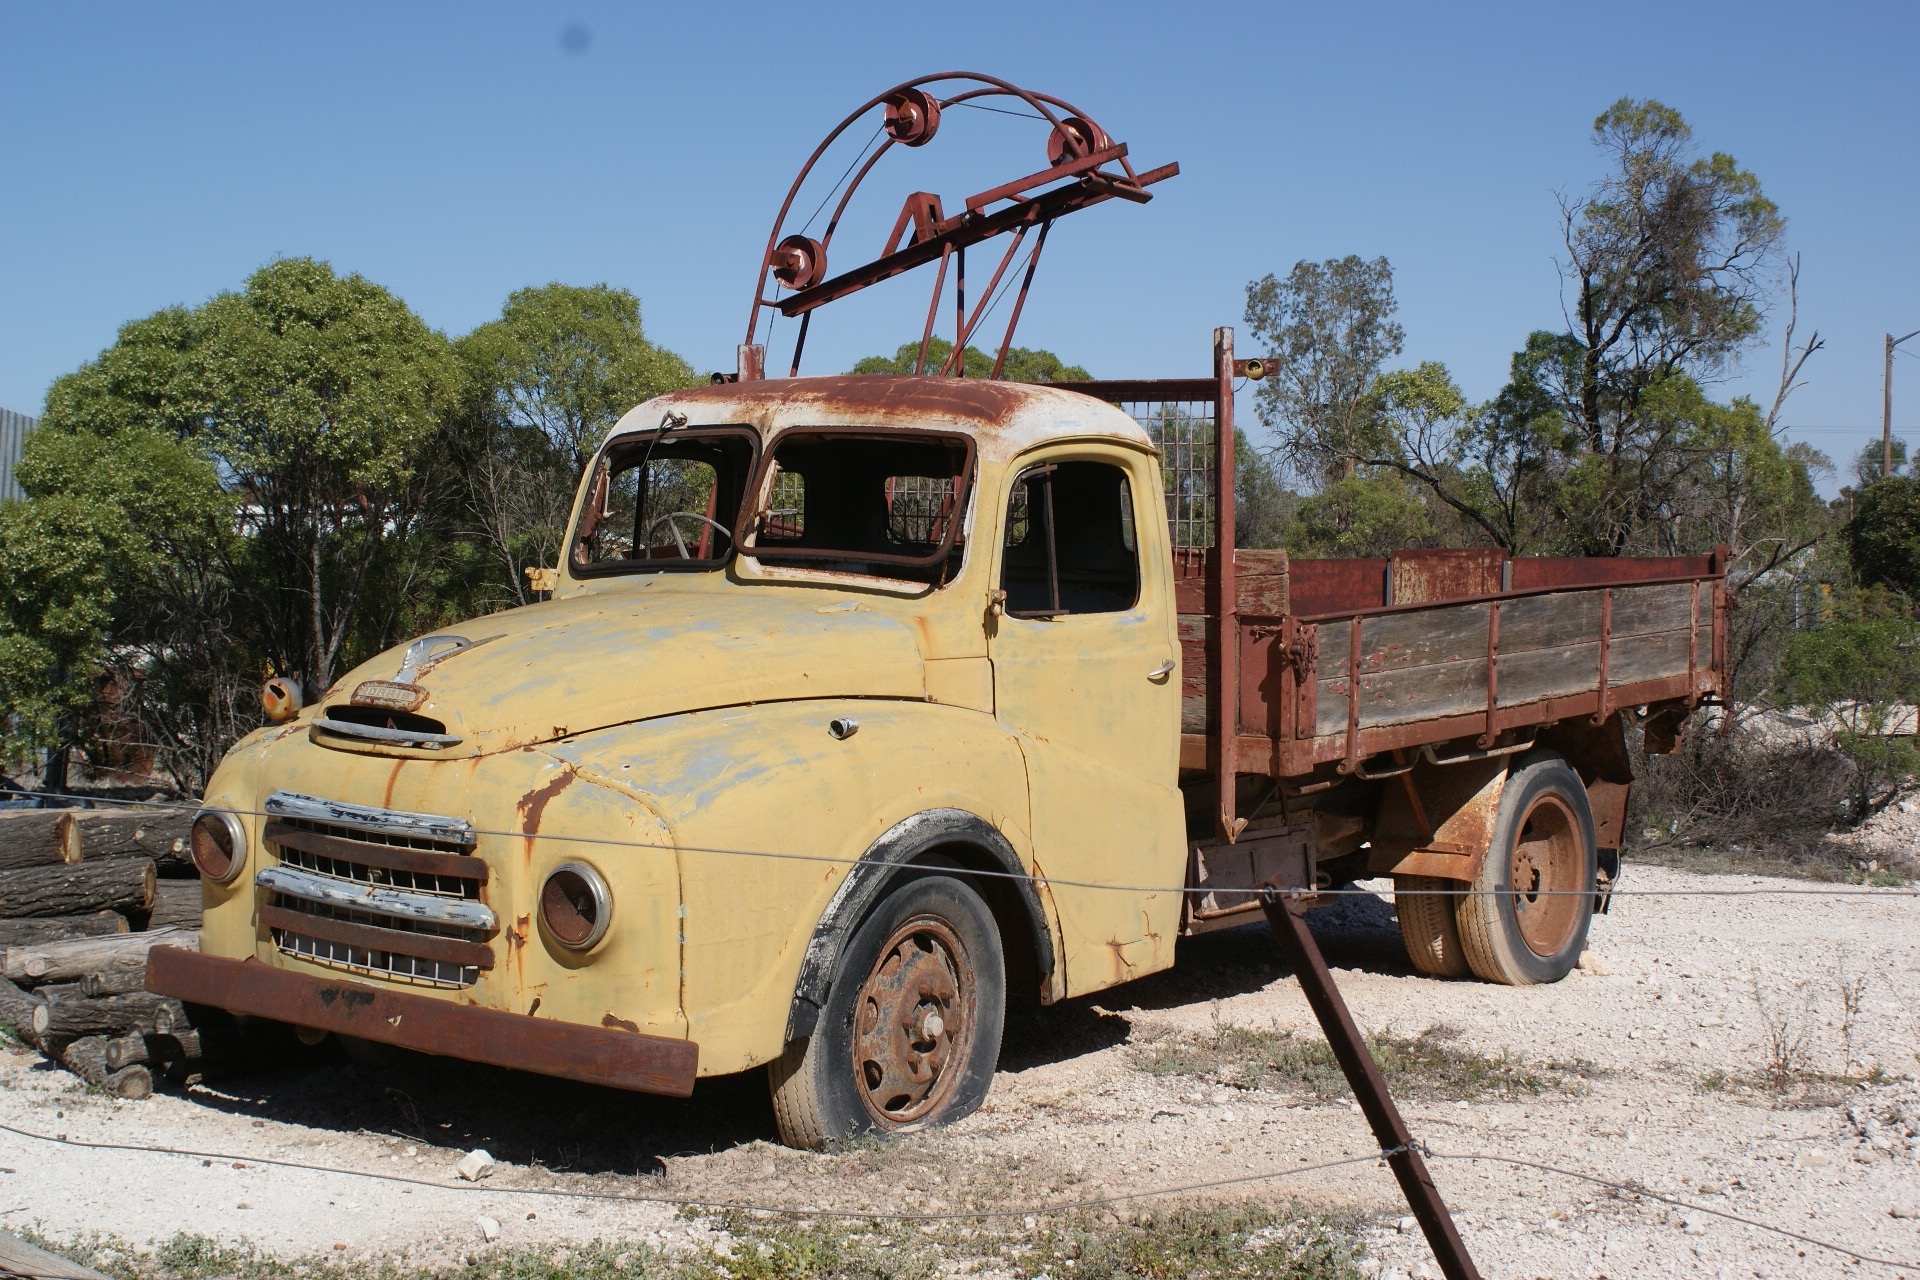 Old Truck still in use